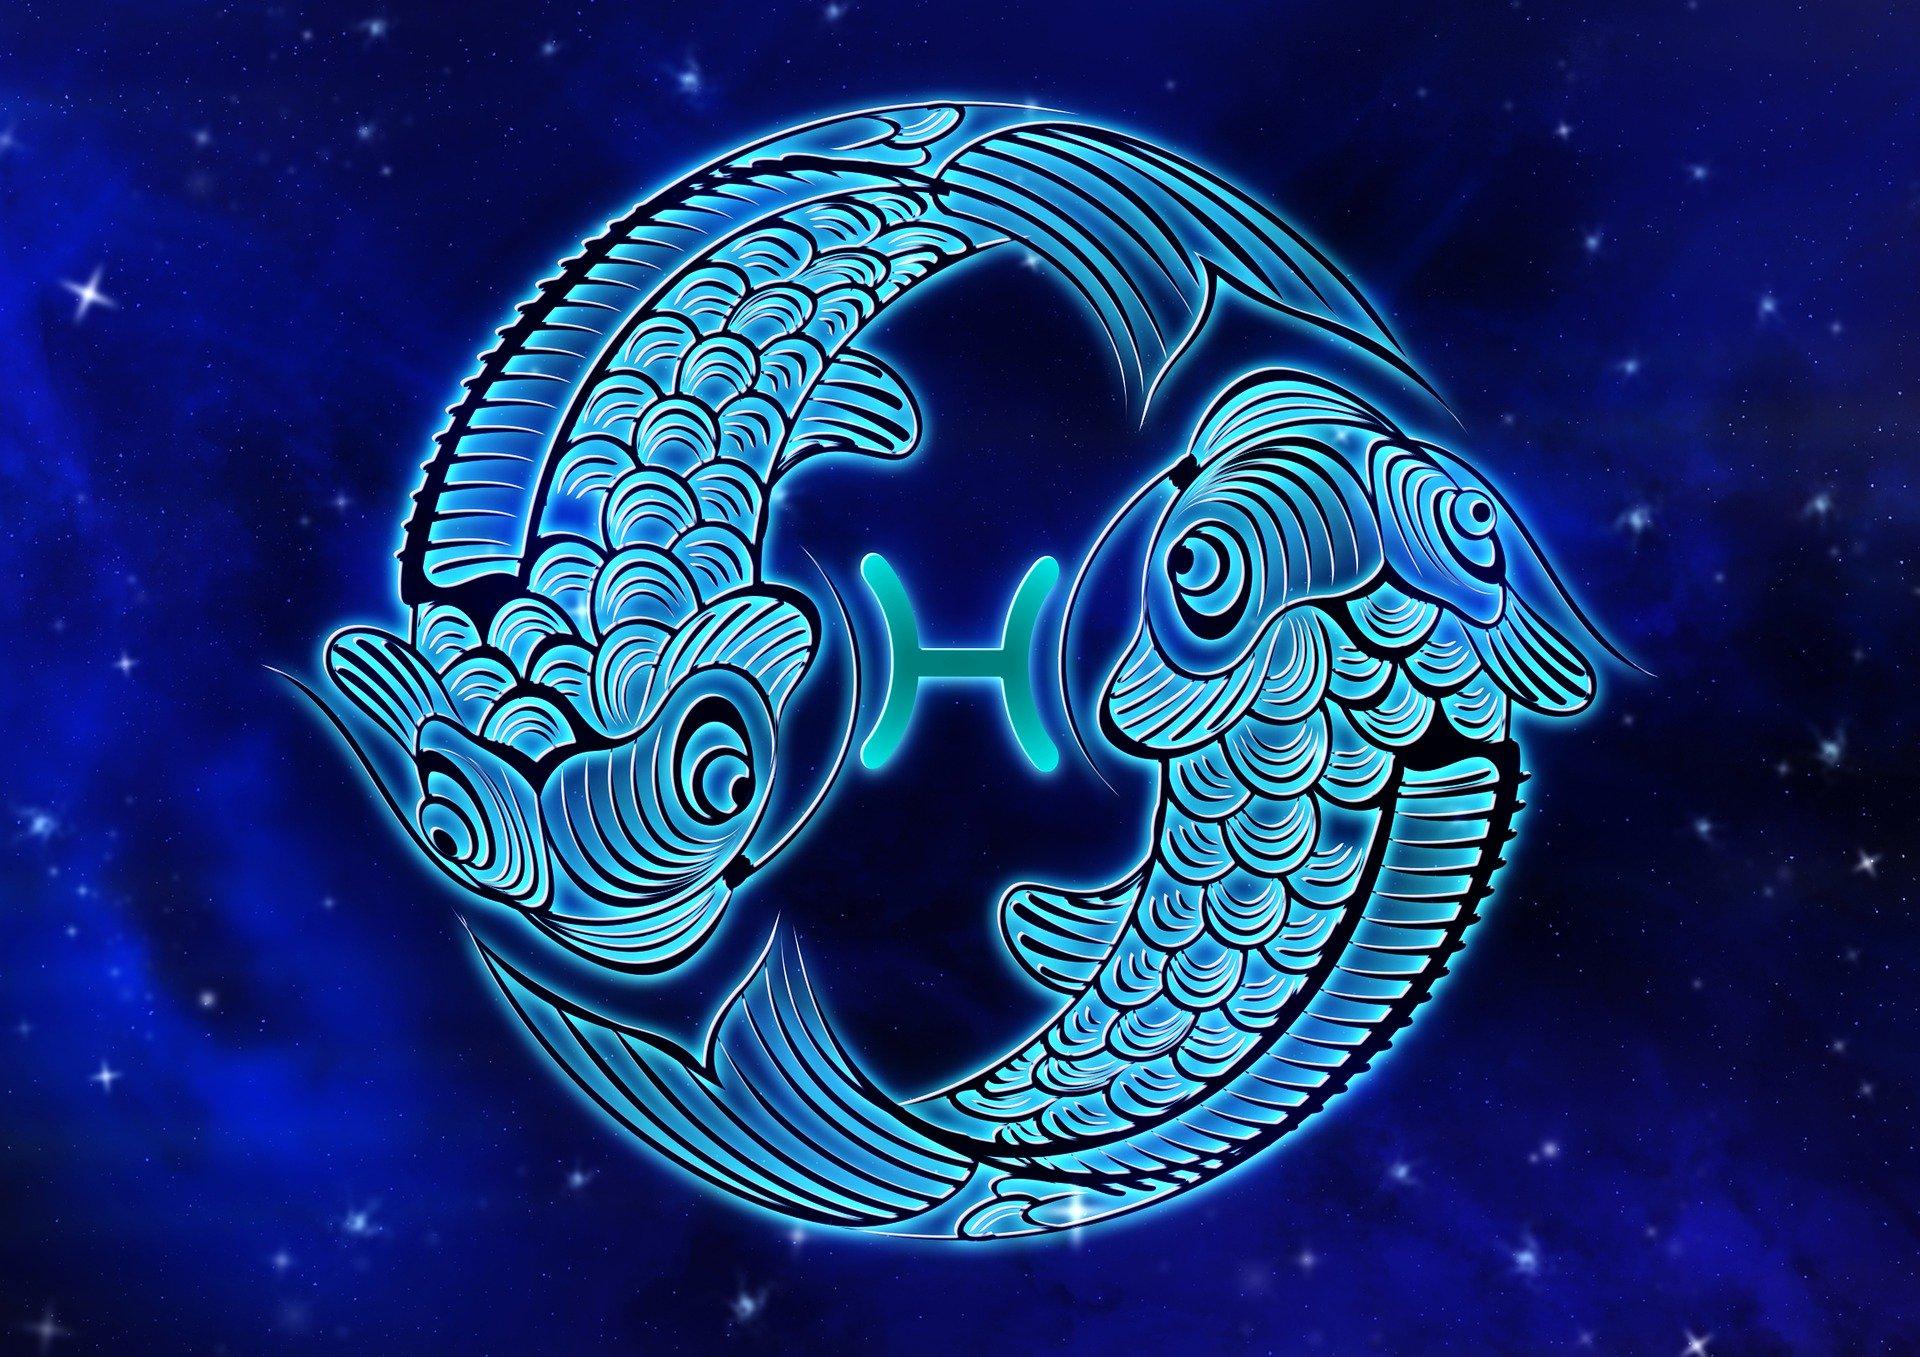 Horoscop Pești 2020. Previziuni astrale despre dragoste, carieră și sănătate